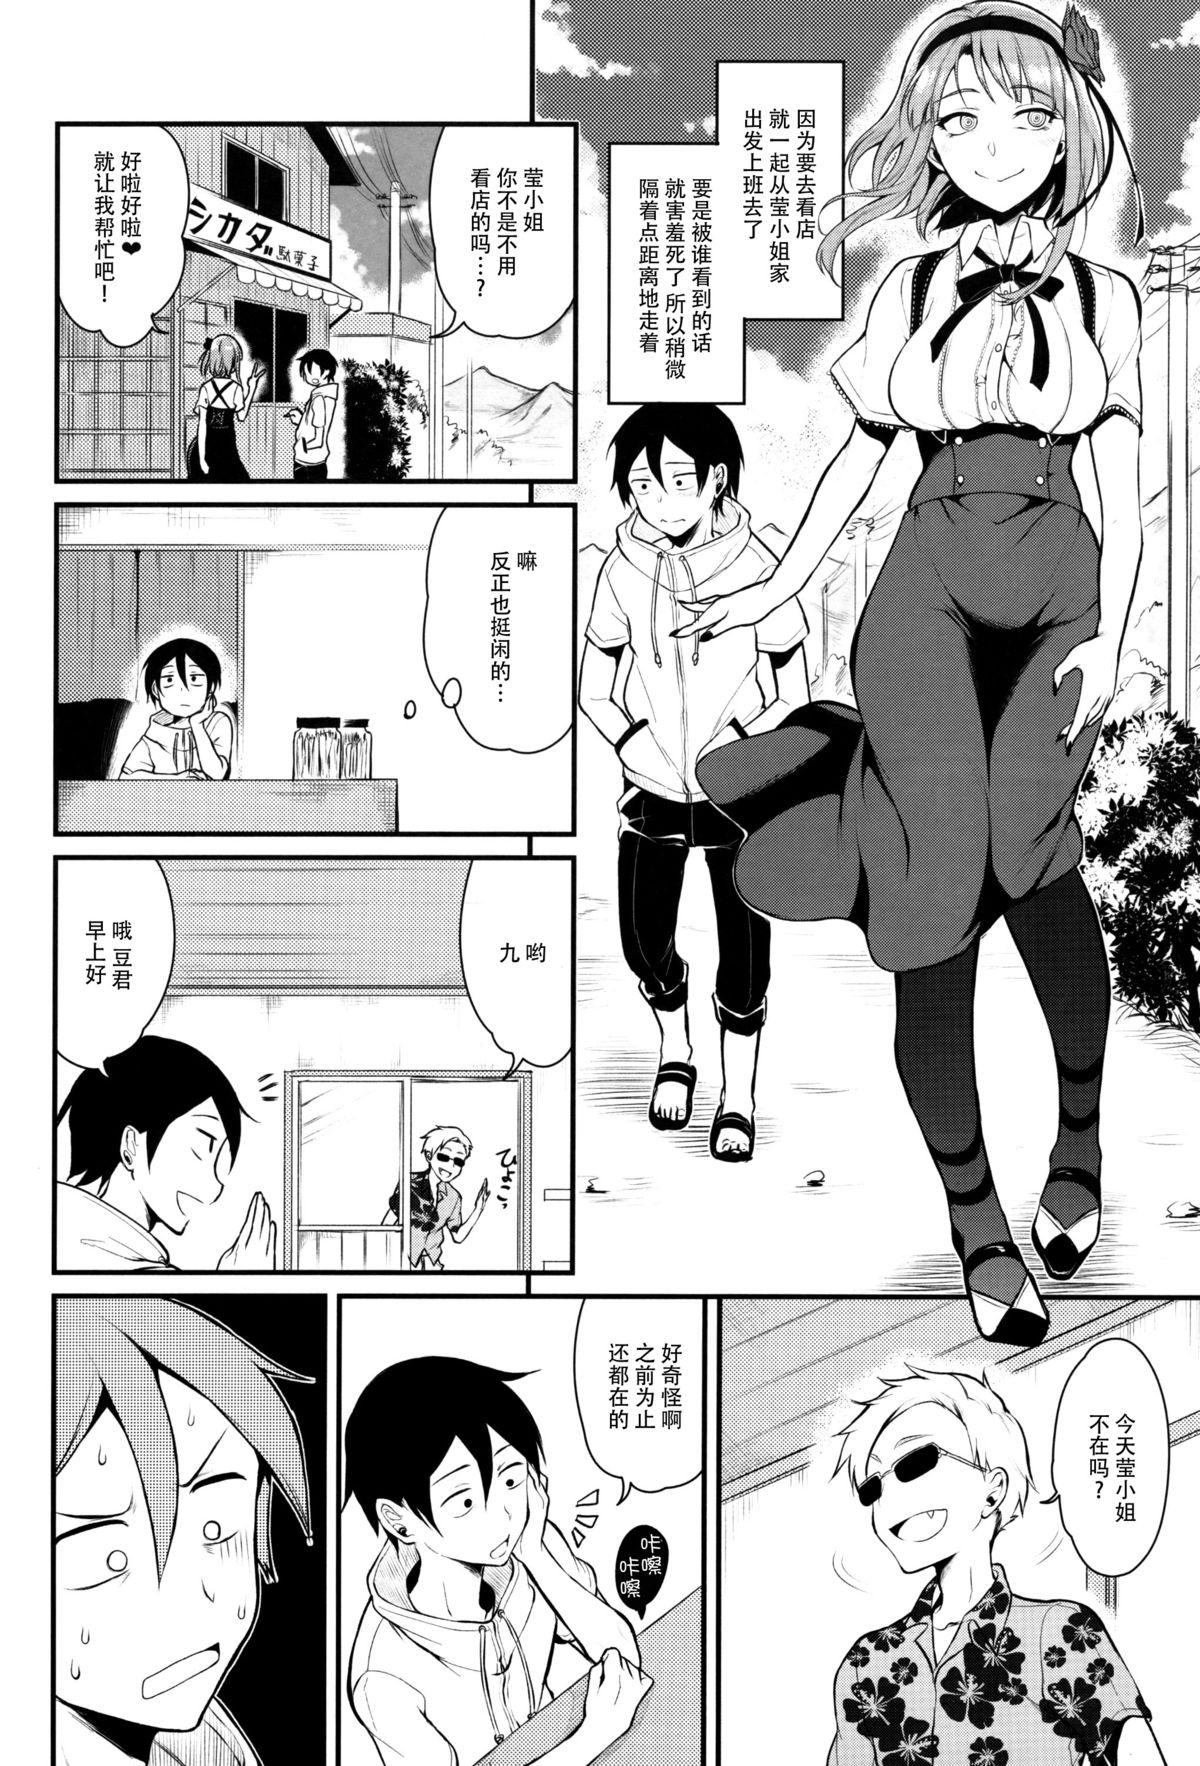 Cutie Otona no Dagashi 3 - Dagashi kashi Horny Slut - Page 11